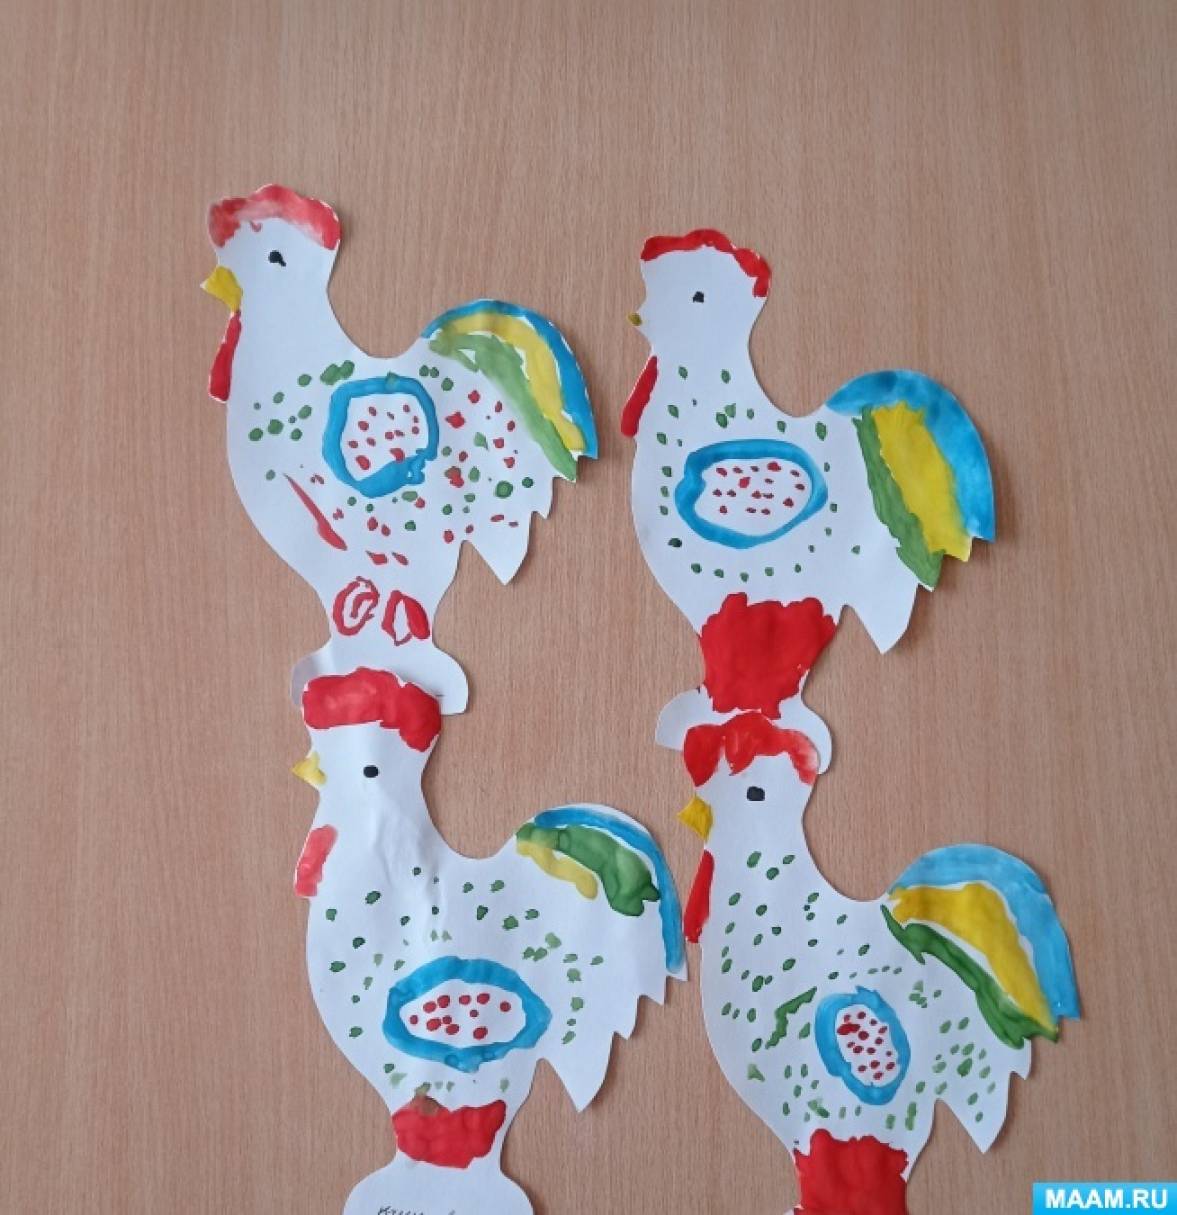 Фотоотчет о рисовании Дымковской игрушки «Петушок» в средней группе